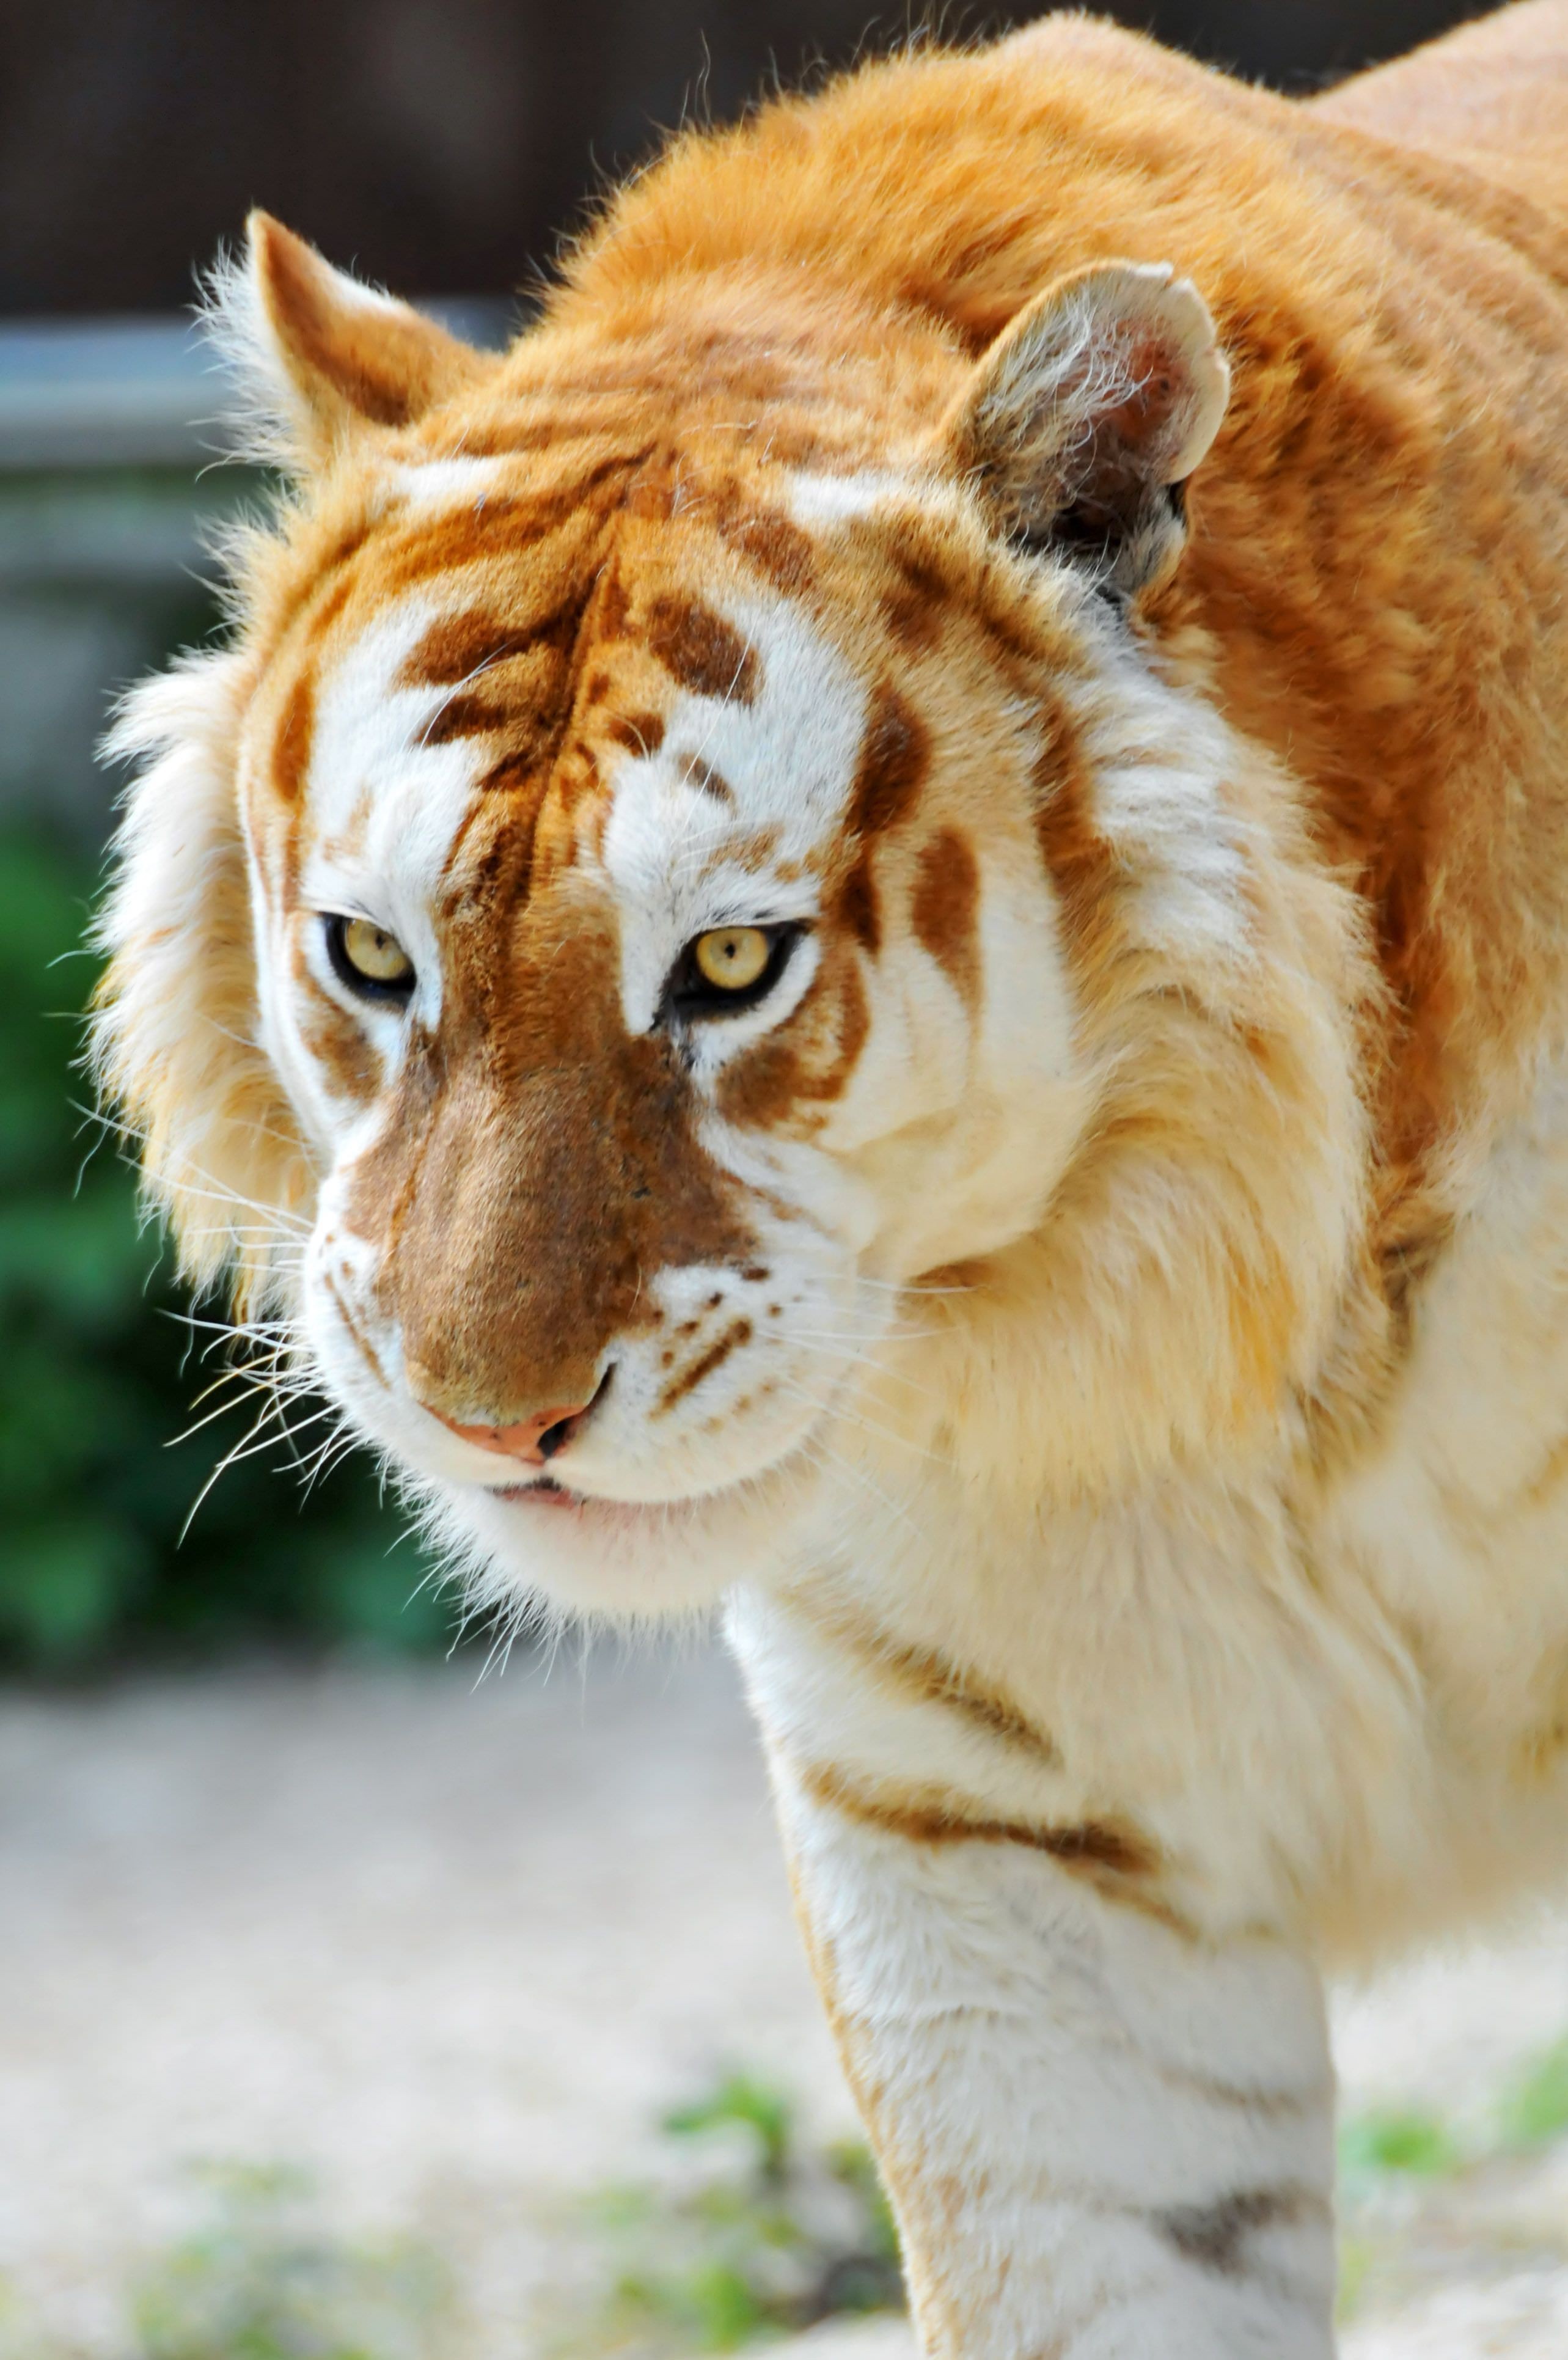 The rare golden tiger